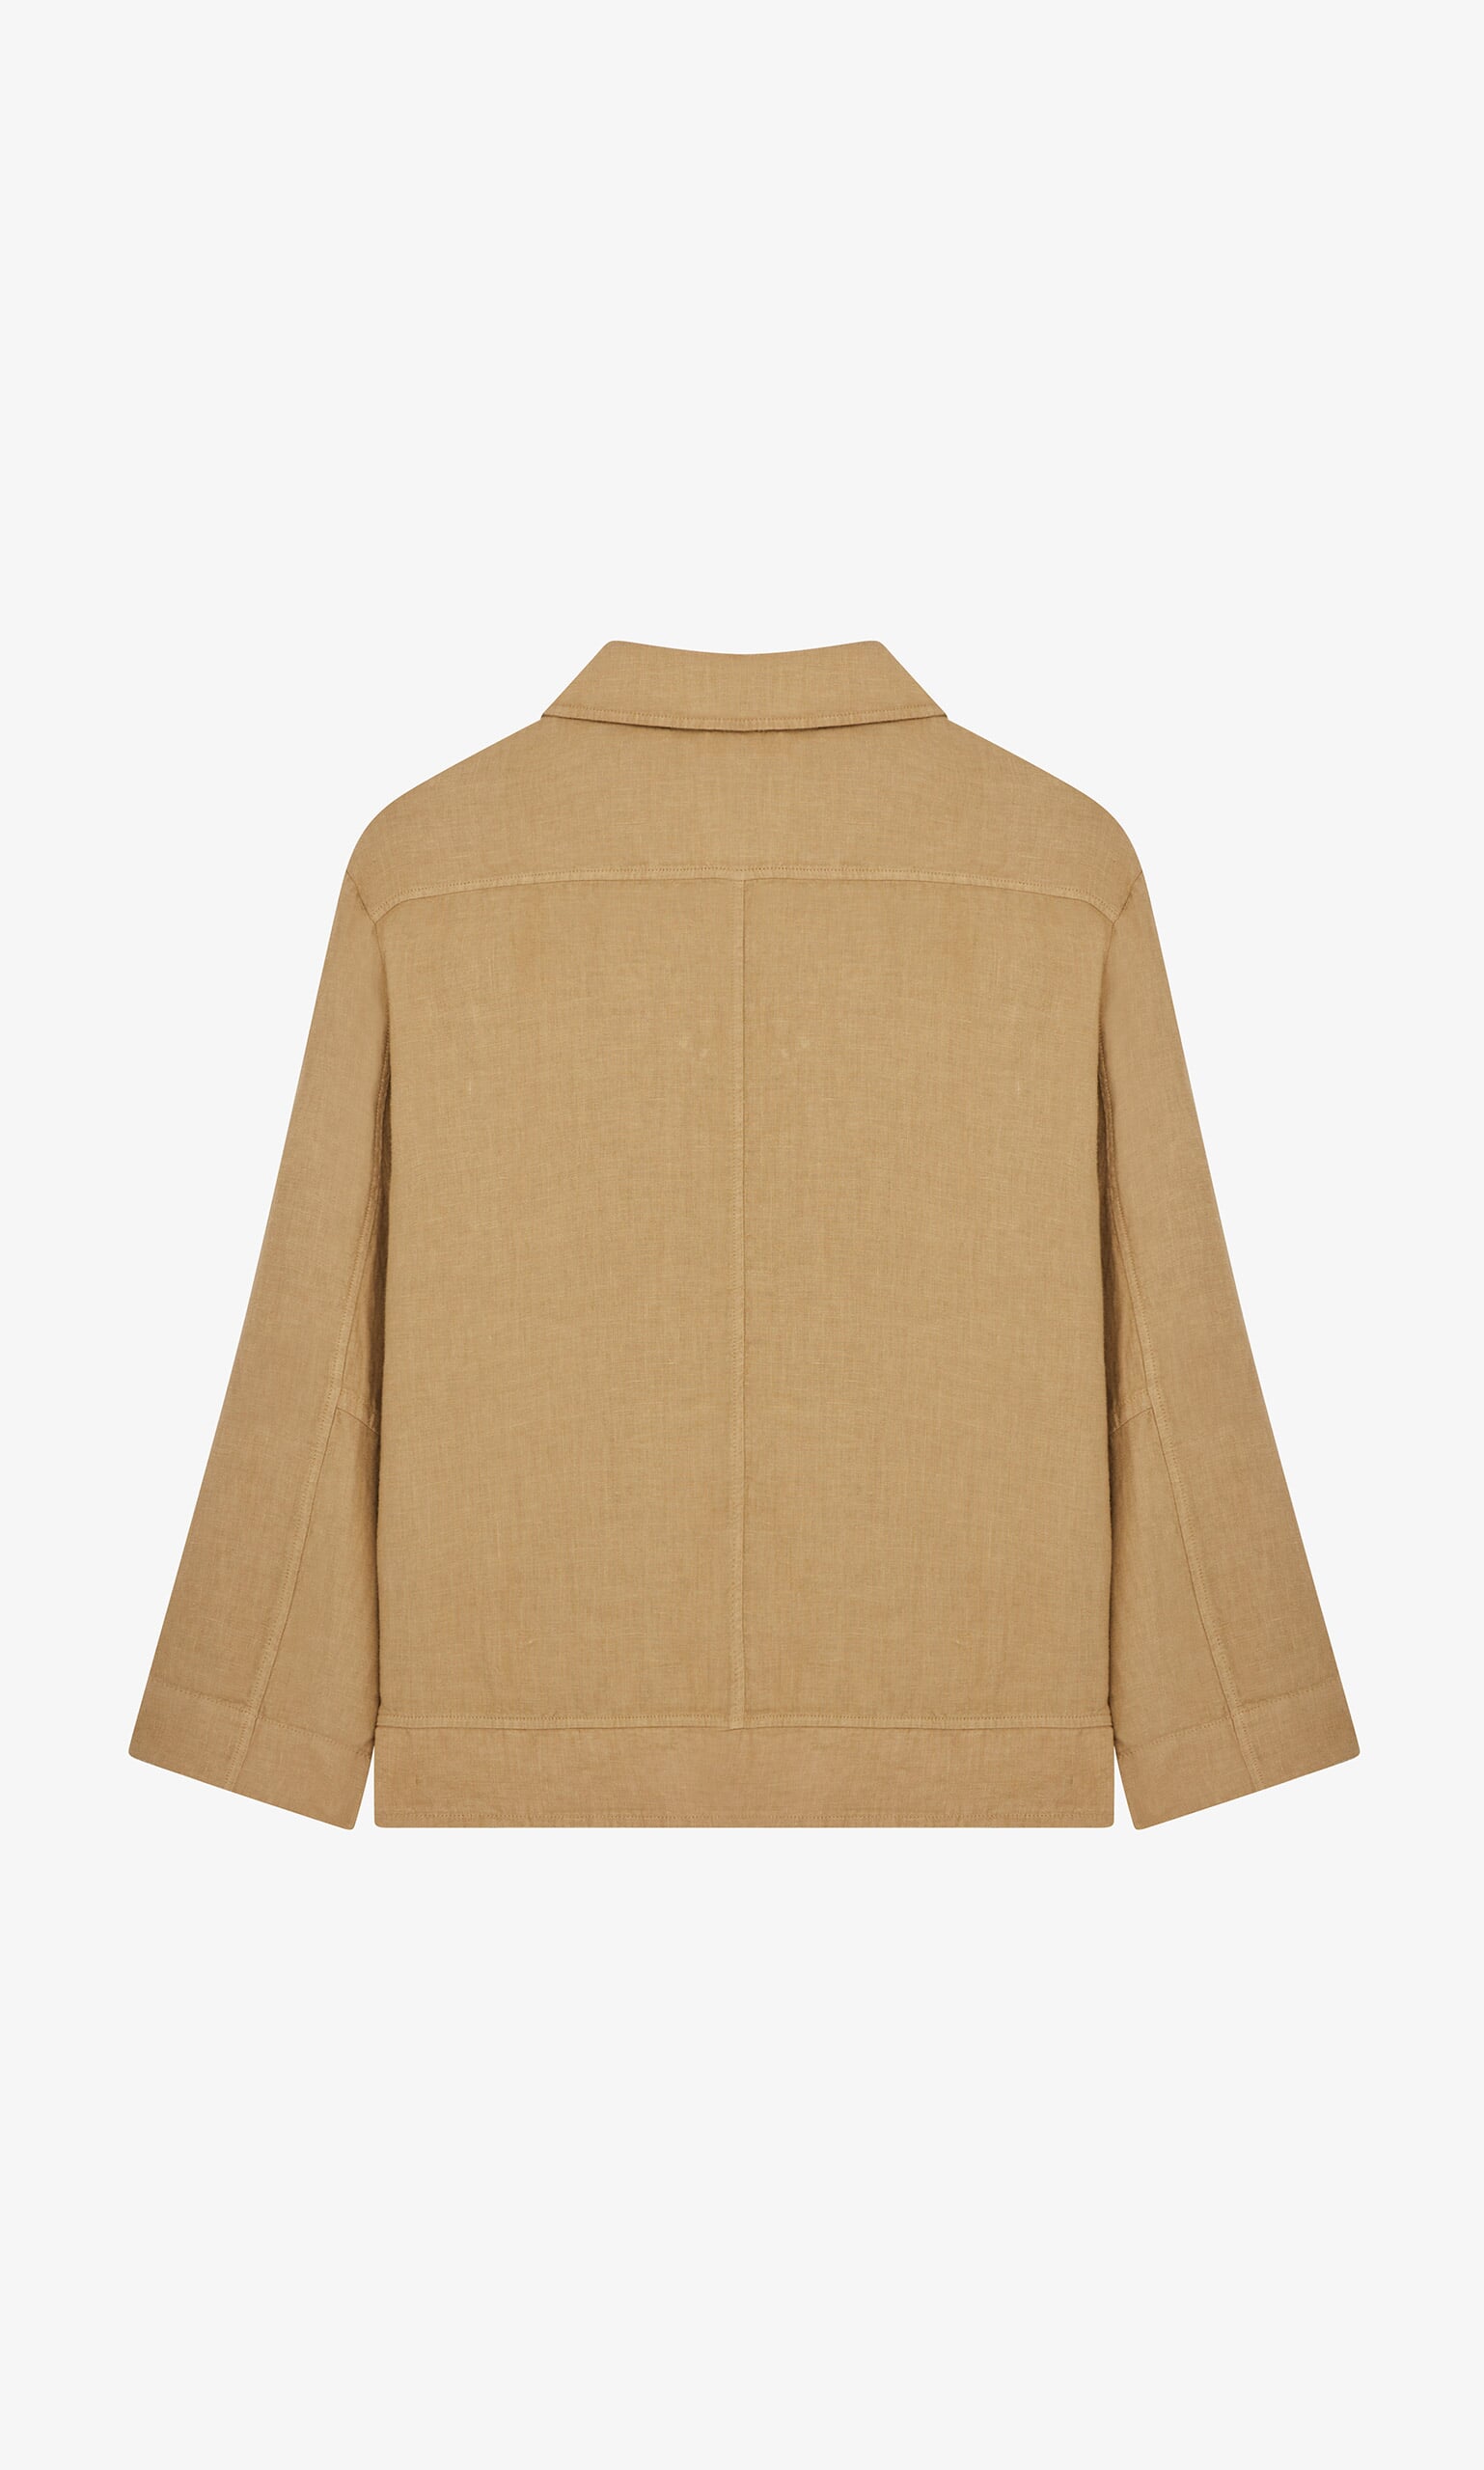 Leys jacket - Plümo Ltd